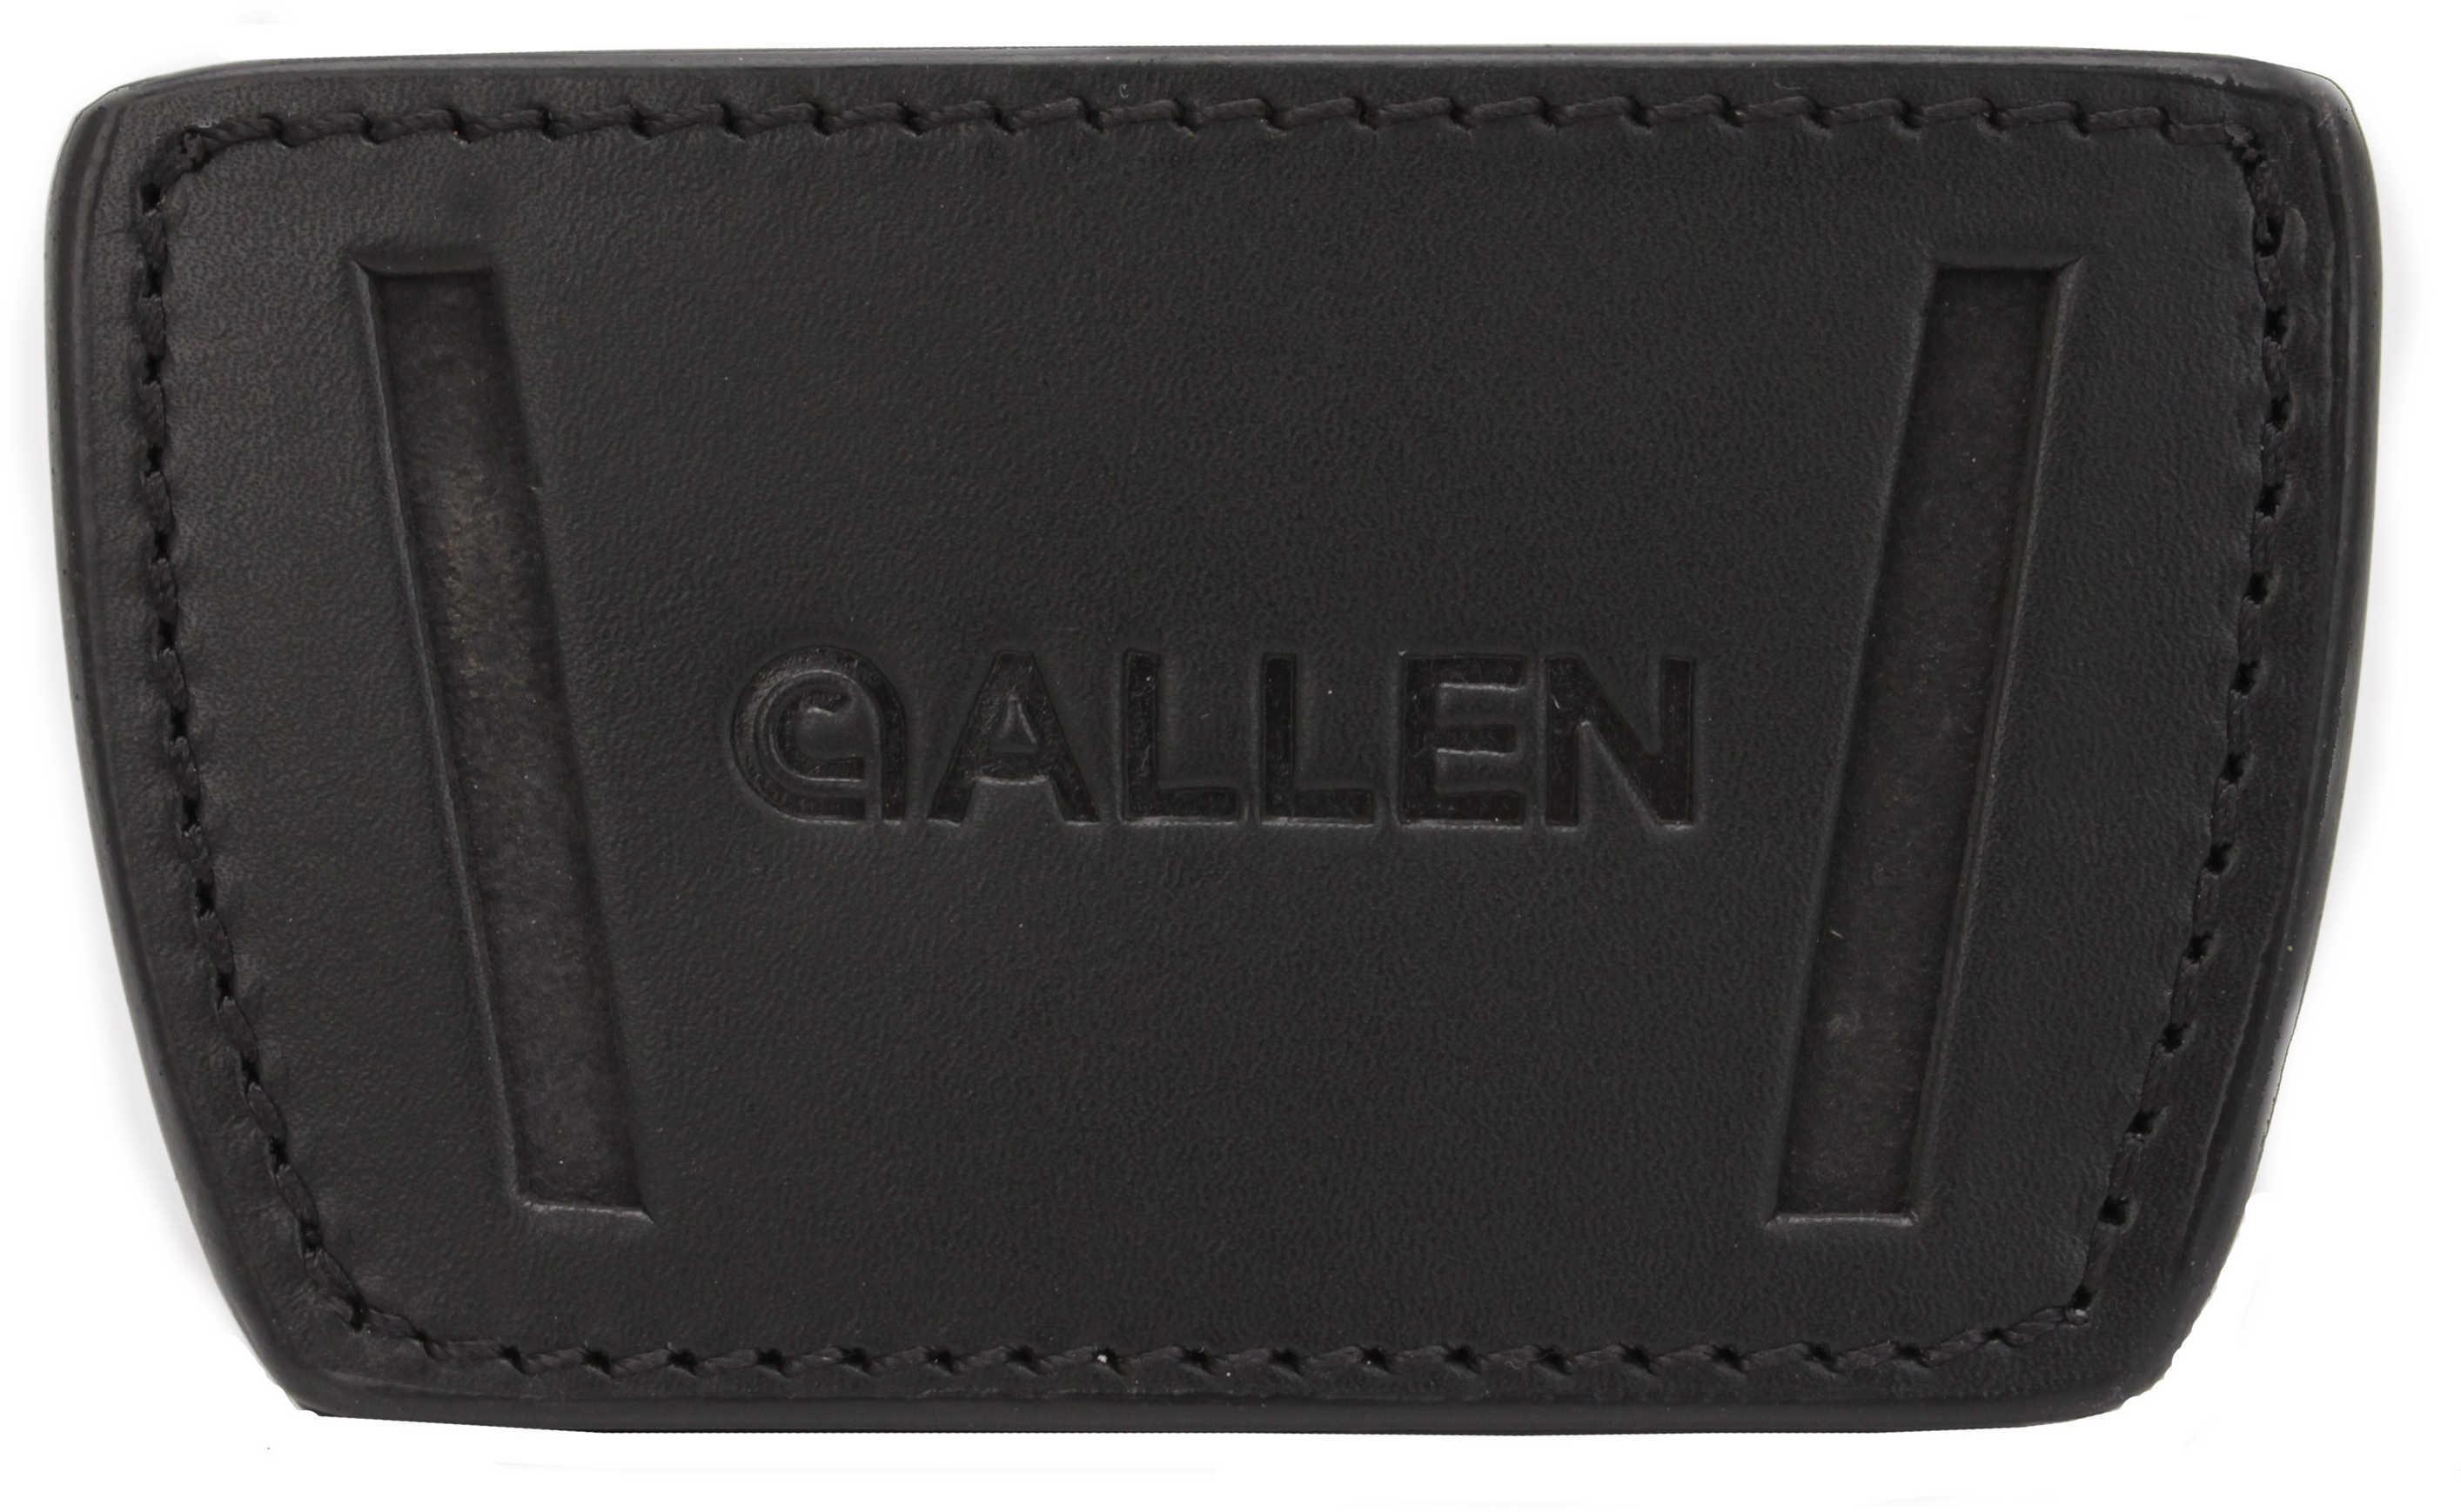 Allen Belt Slide Holster AMBI Leather Med Frame Autos Black